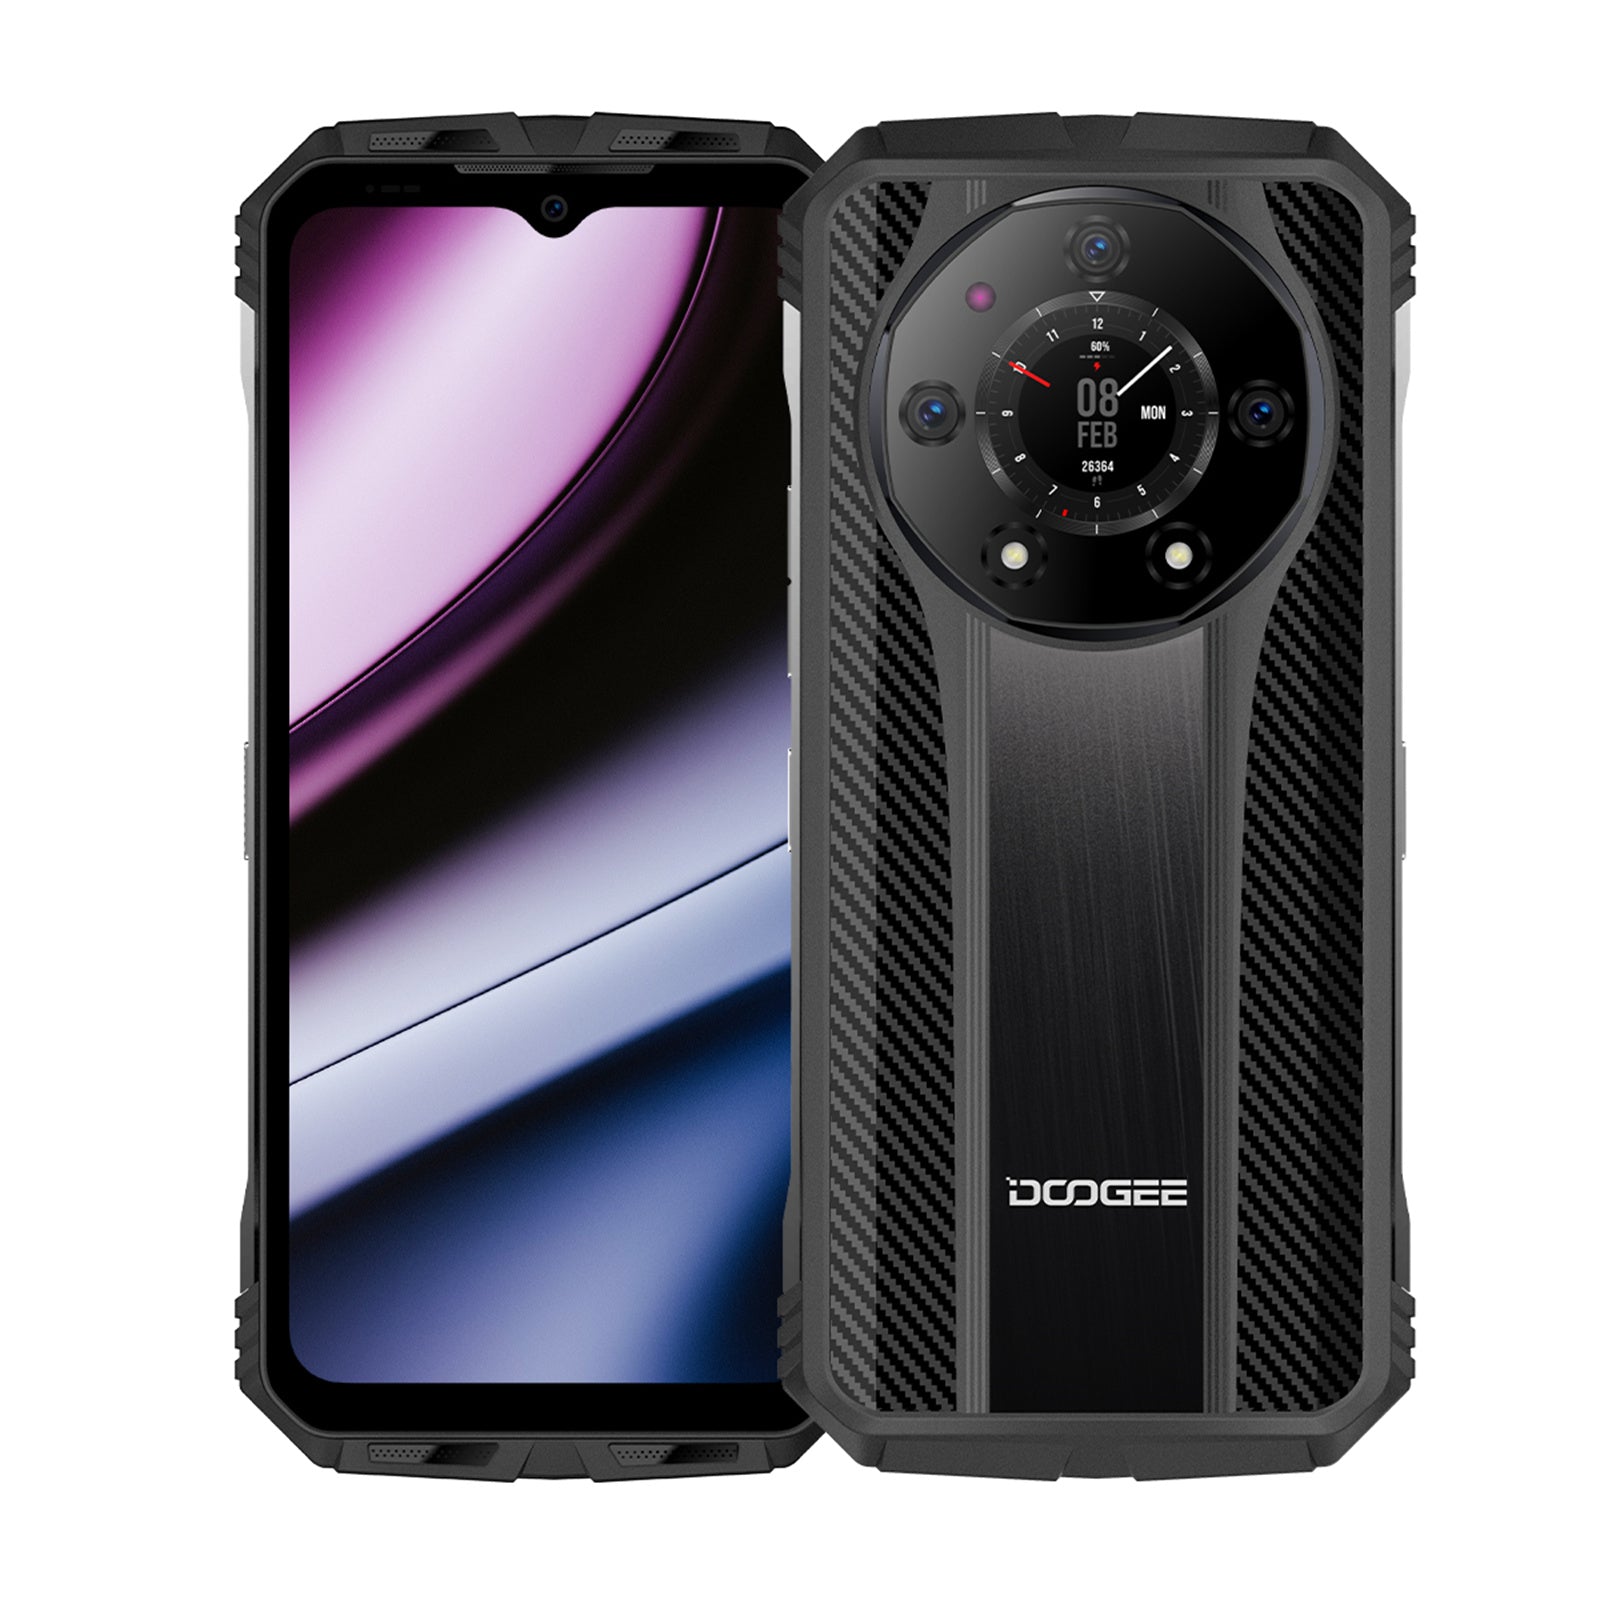 DOOGEE mobile - Emprenda cualquier aventura con el Doogee S100 Pro